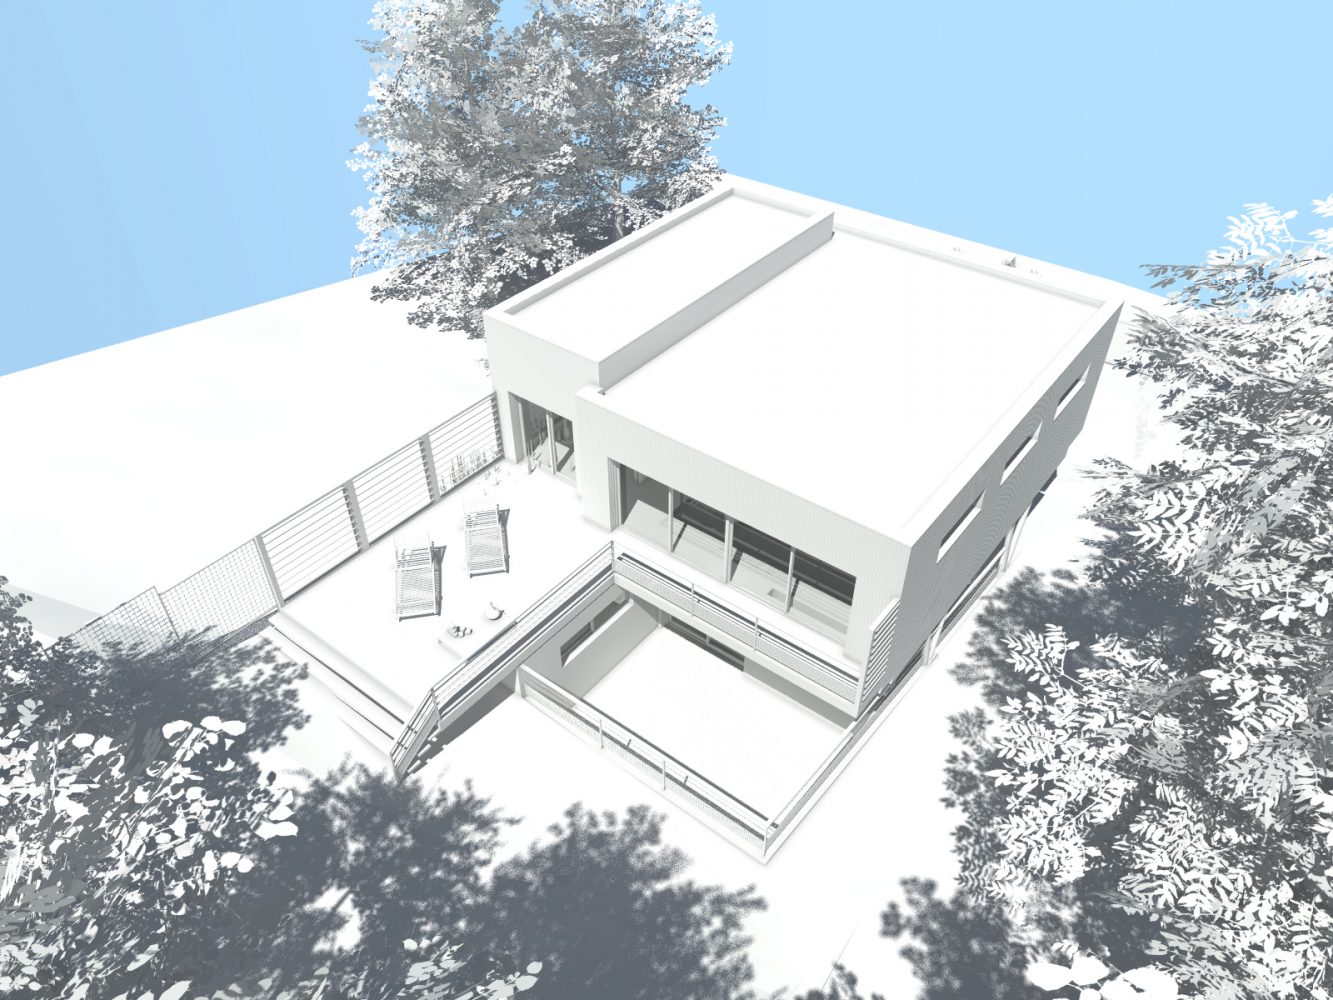 Philippe_Zerbib_Architecte_construction_maisons_ossature_bois_projet_maison_Amozigh_View 0_3